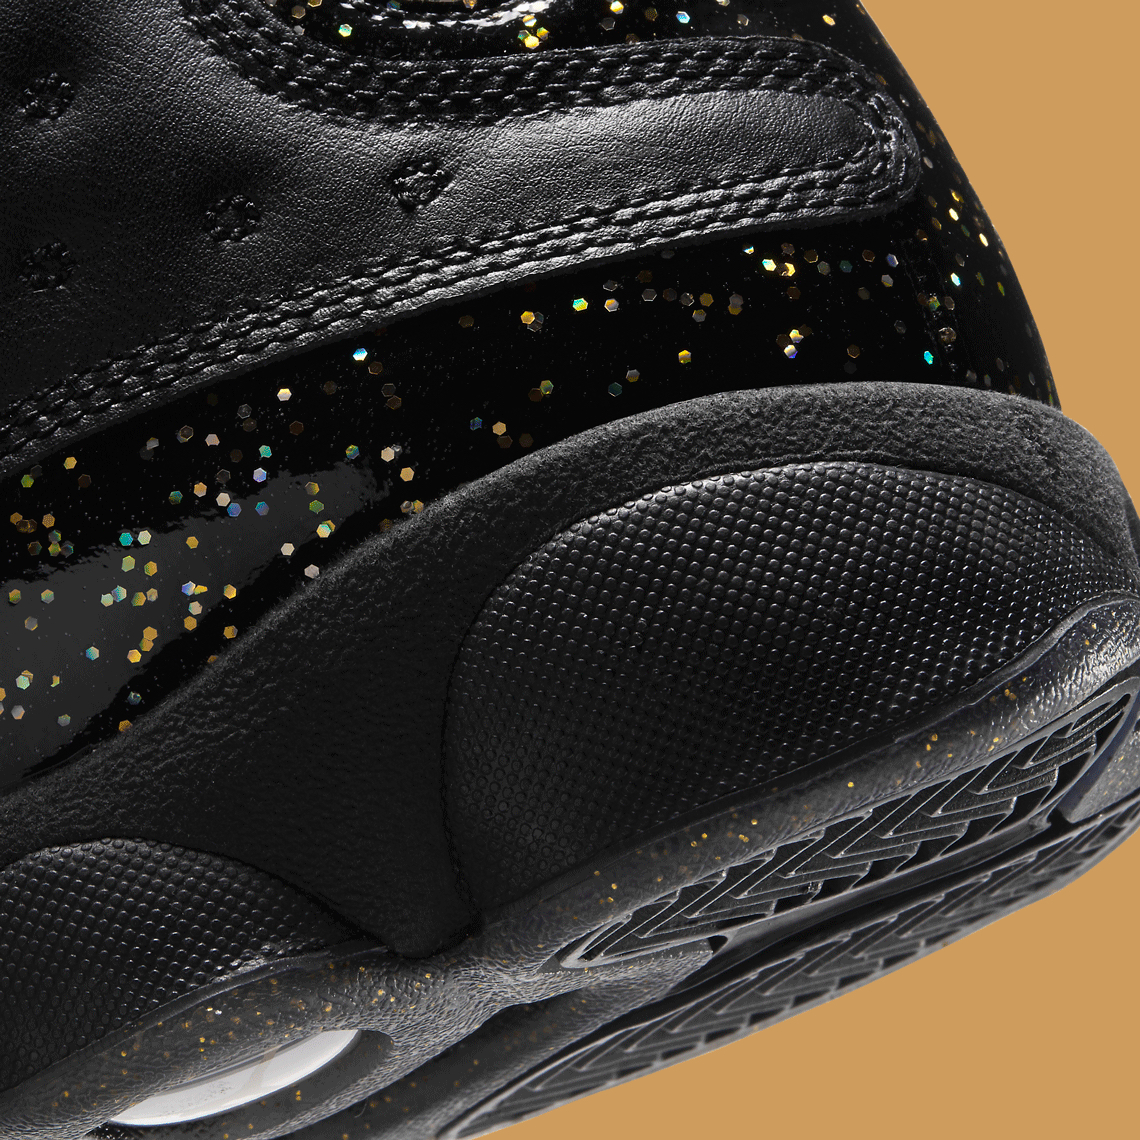 Air Jordan 13 Black Gold Gum 439358-021 - Sneaker Bar Detroit